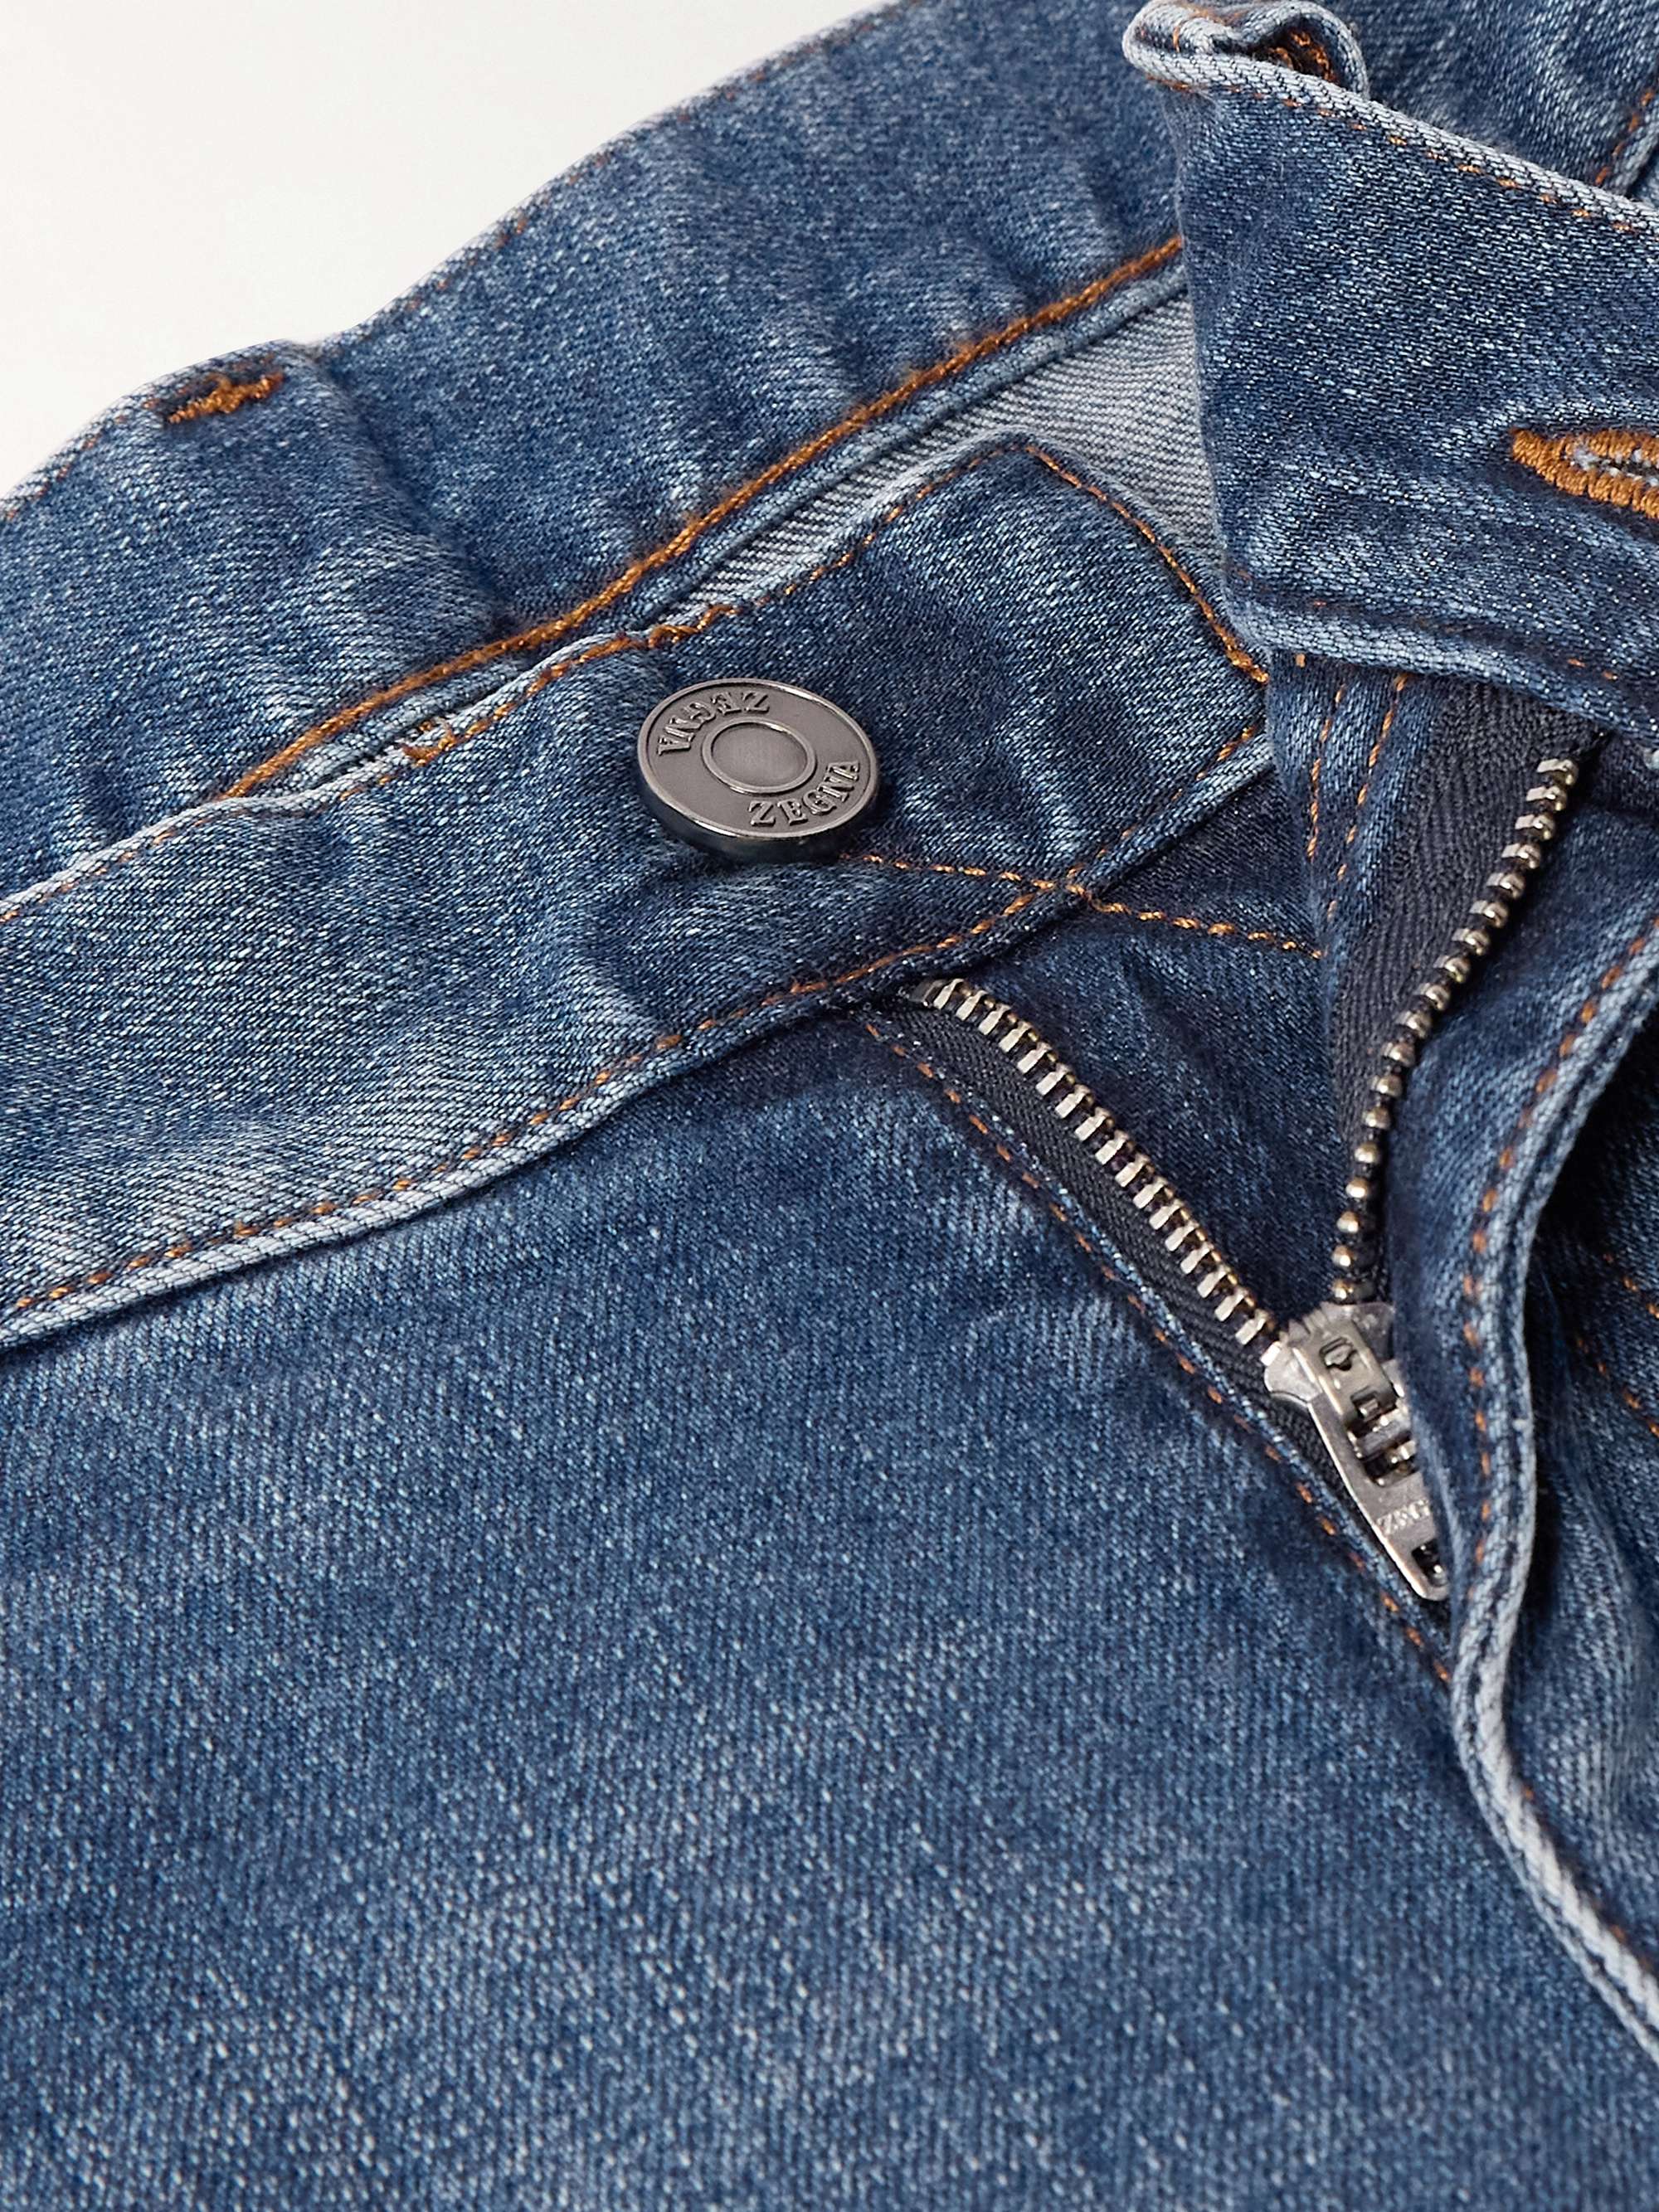 ZEGNA Slim-Fit Jeans for Men | MR PORTER